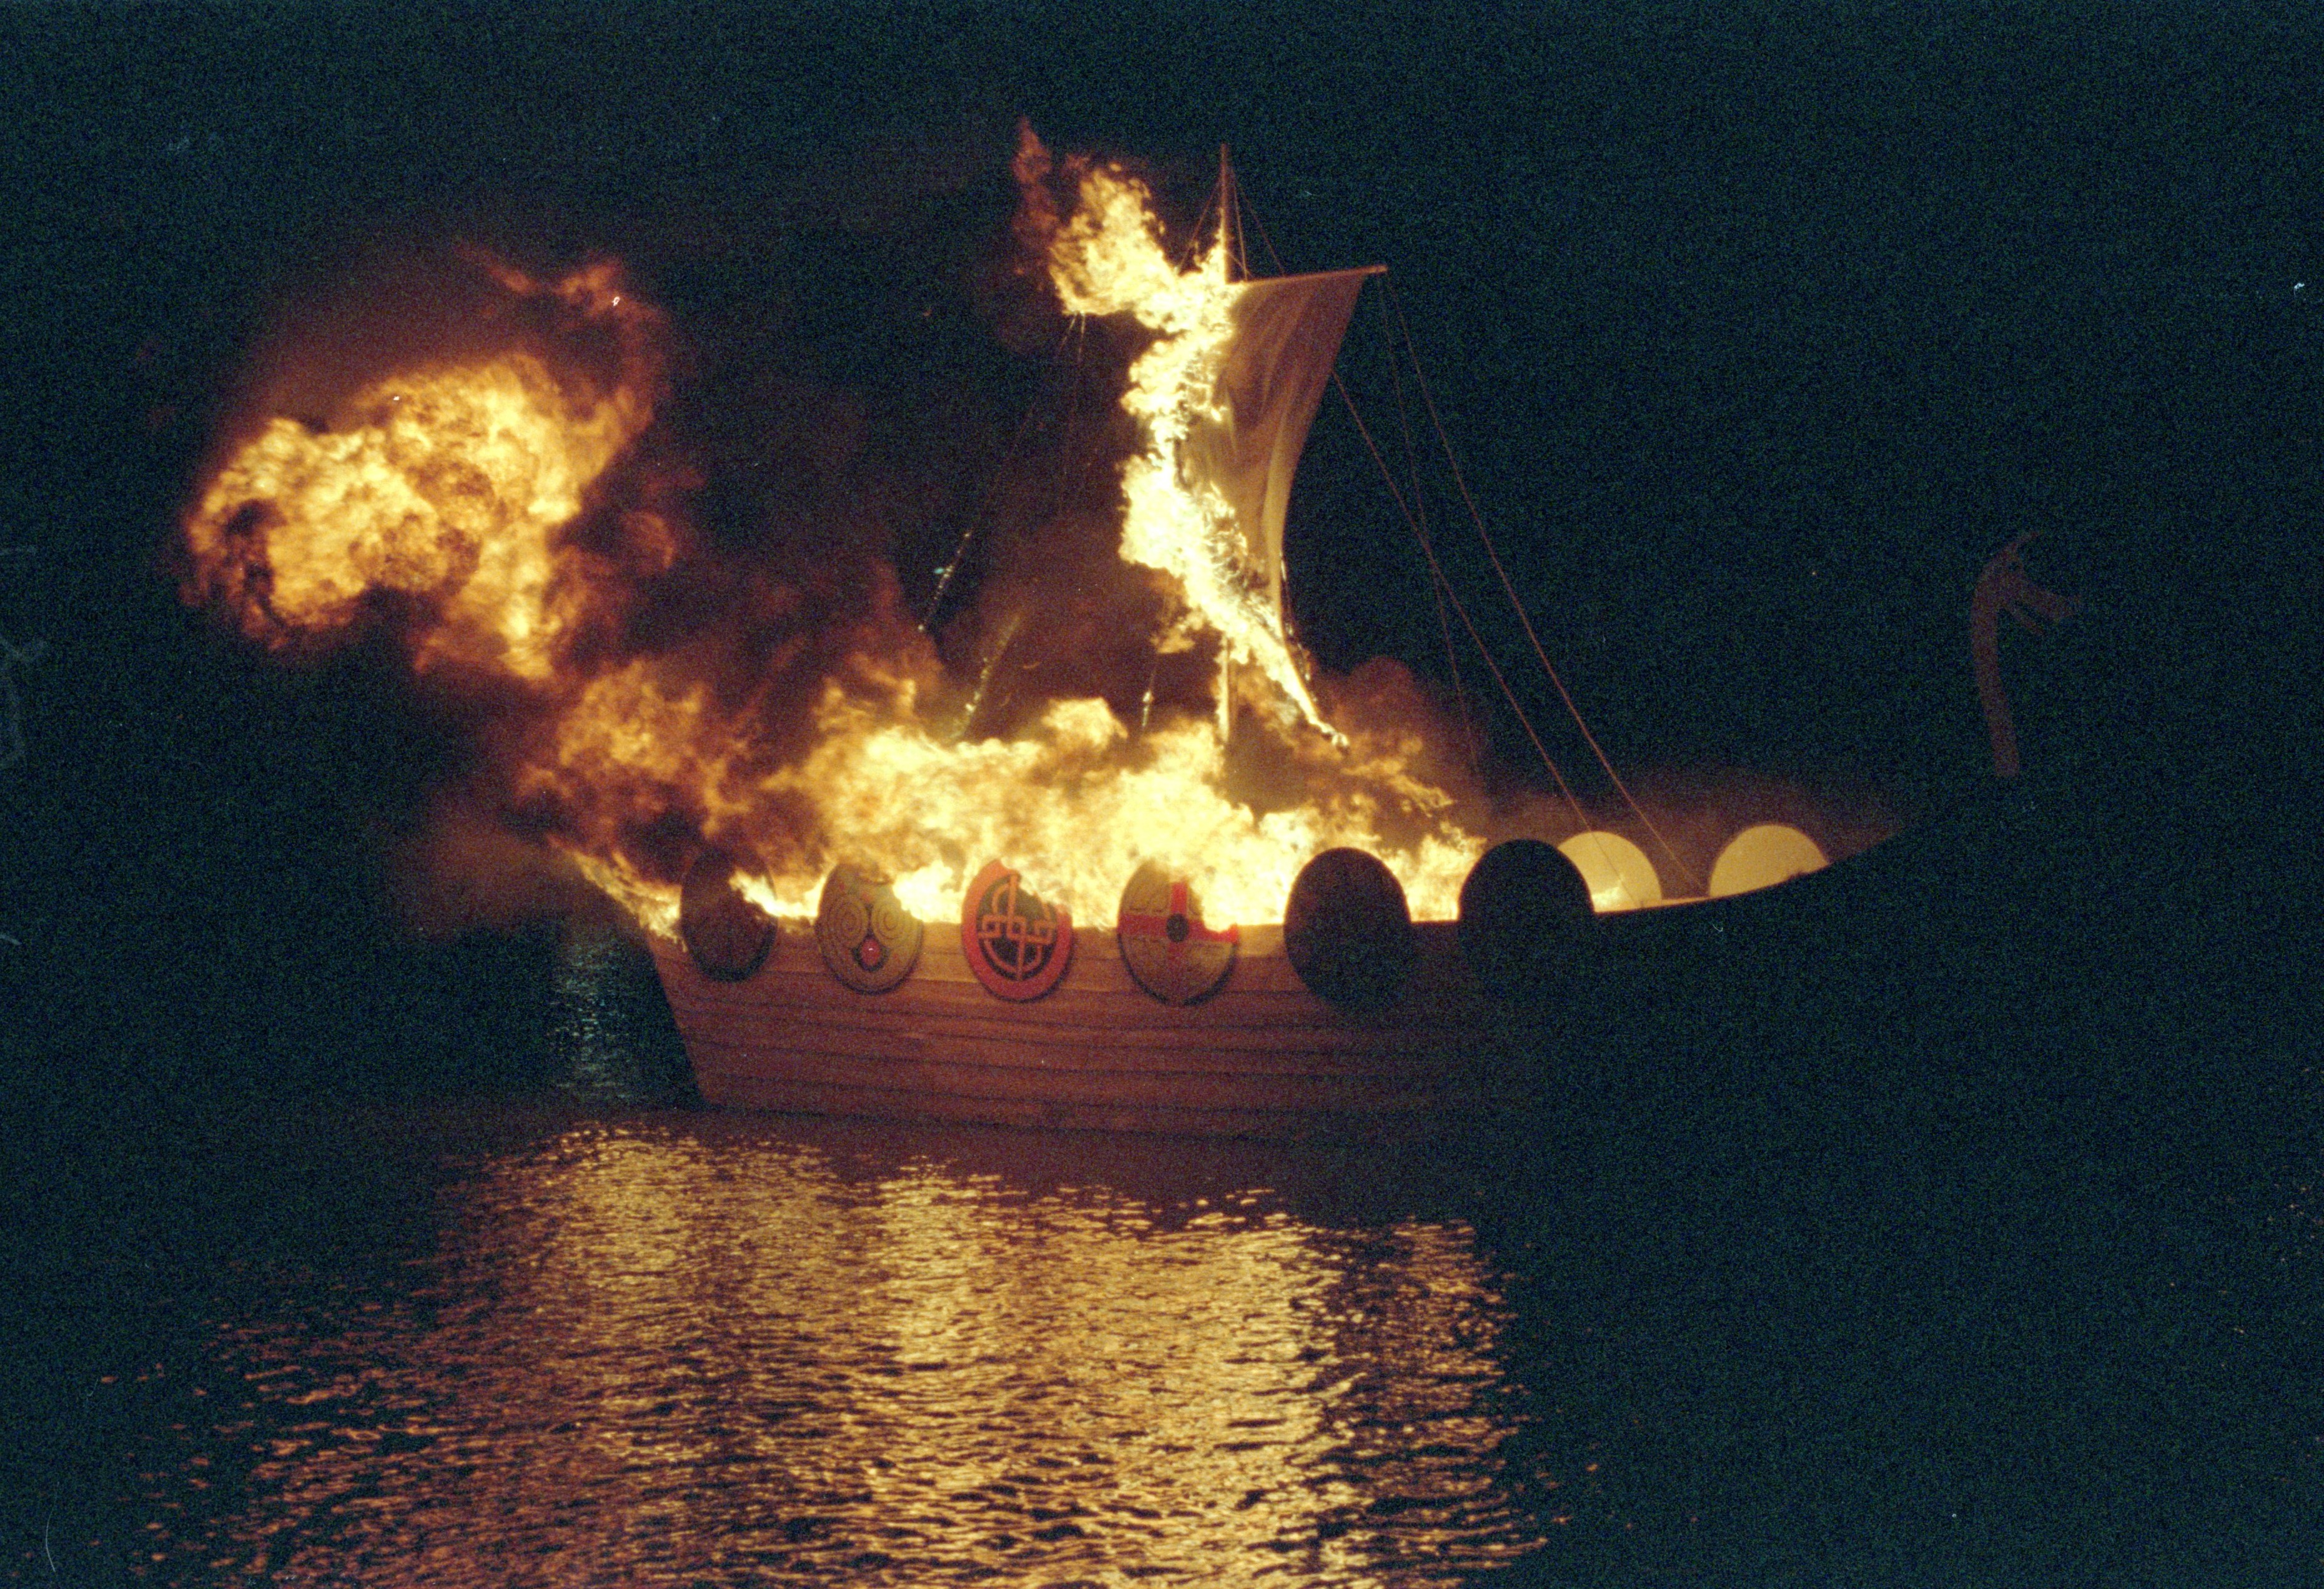 Boat-burning at York